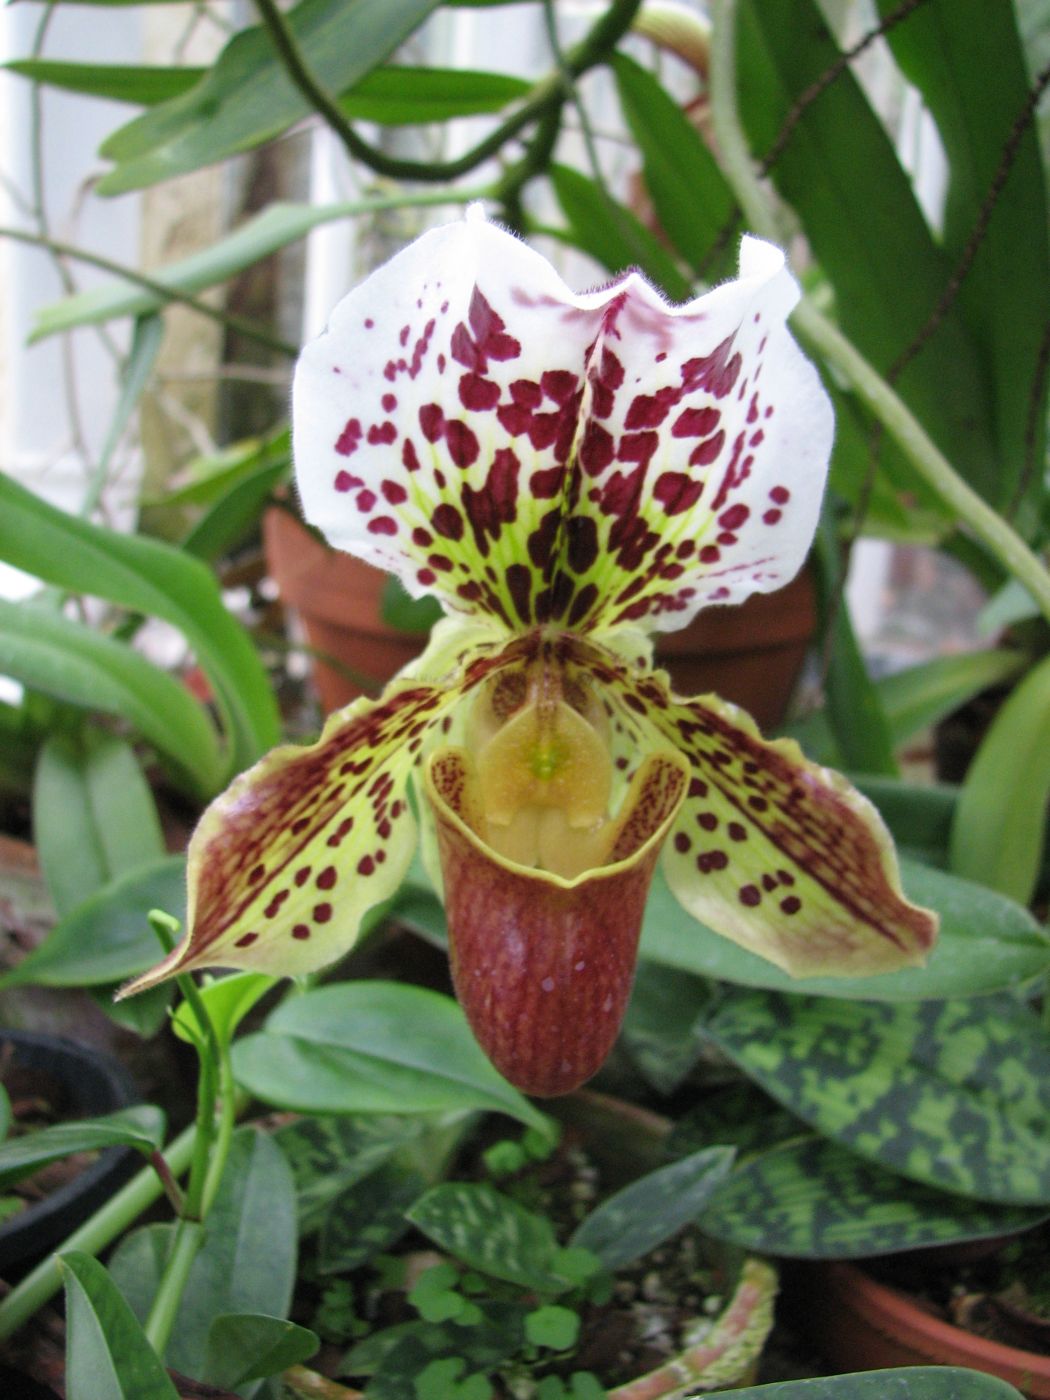 Características da orquidea Sapatinho (Paphiopedilum Hibridus) -  PlantaSonya - O seu blog sobre cultivo de plantas e flores